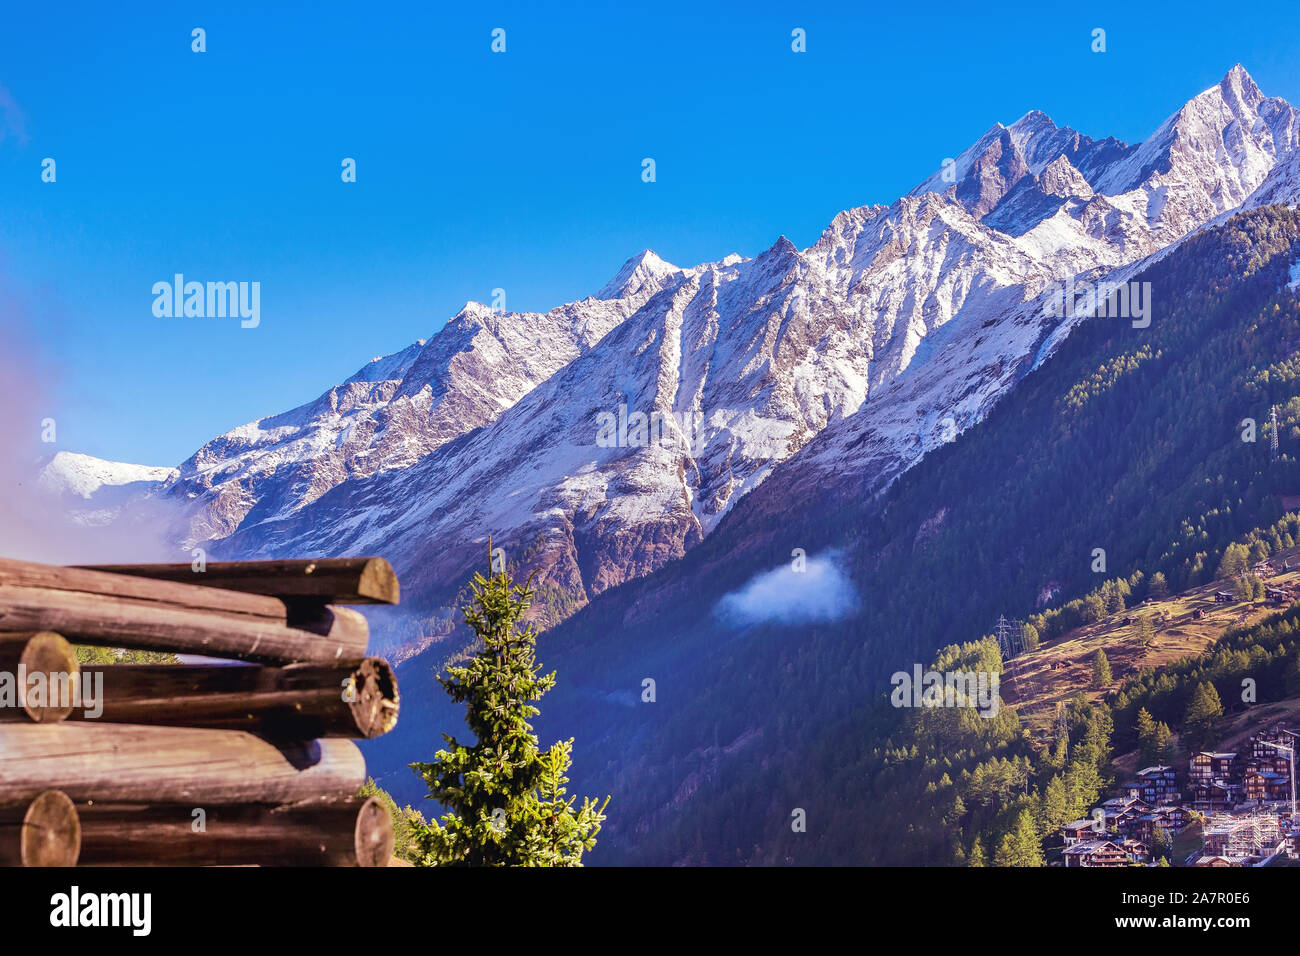 Alpi svizzere in Svizzera, balcone in legno e picchi innevati in Zermatt Foto Stock